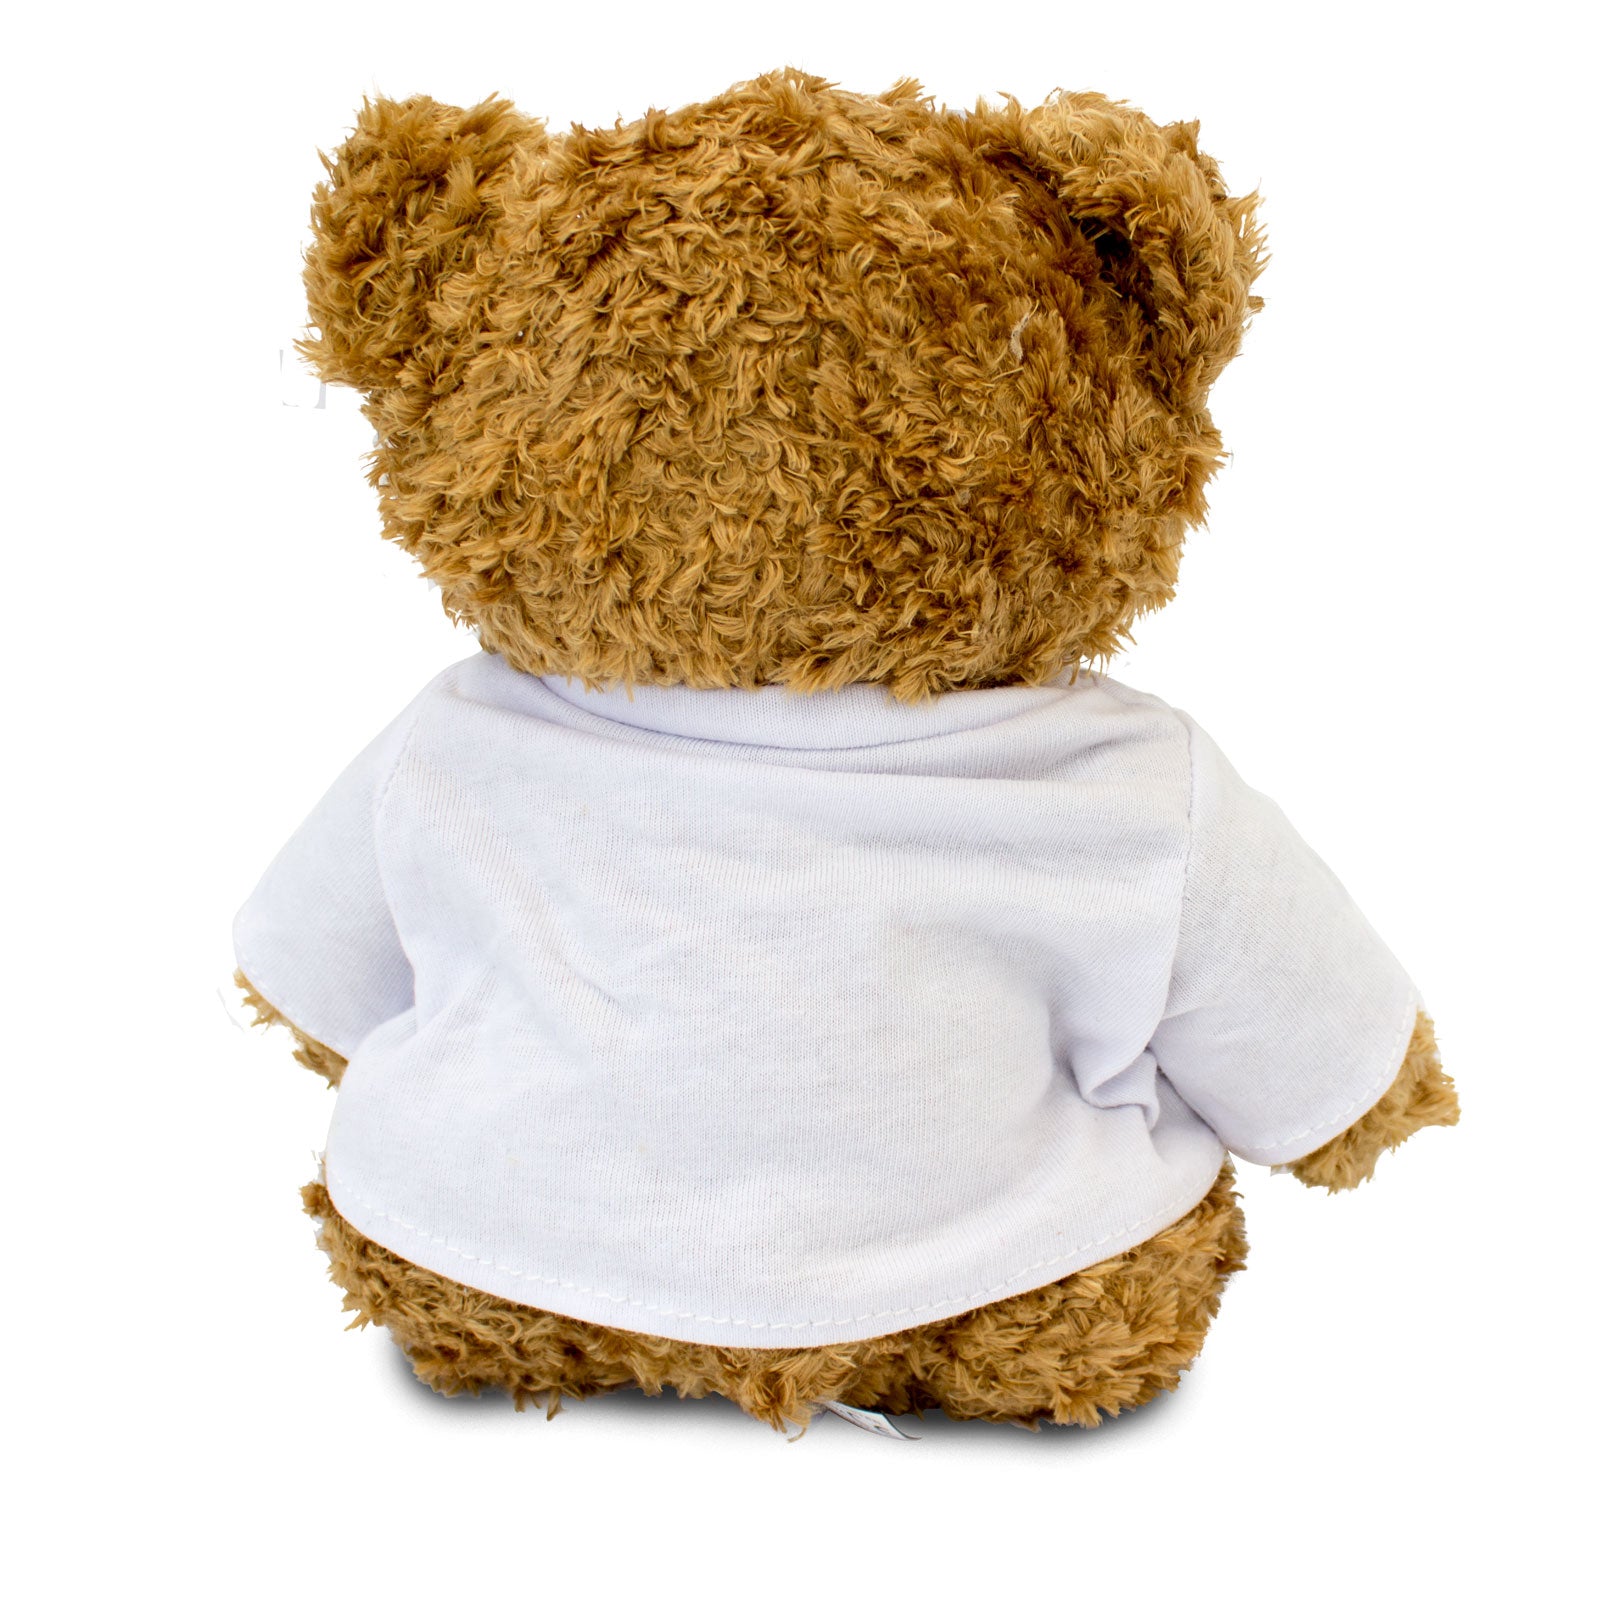 I Love Finn - Teddy Bear